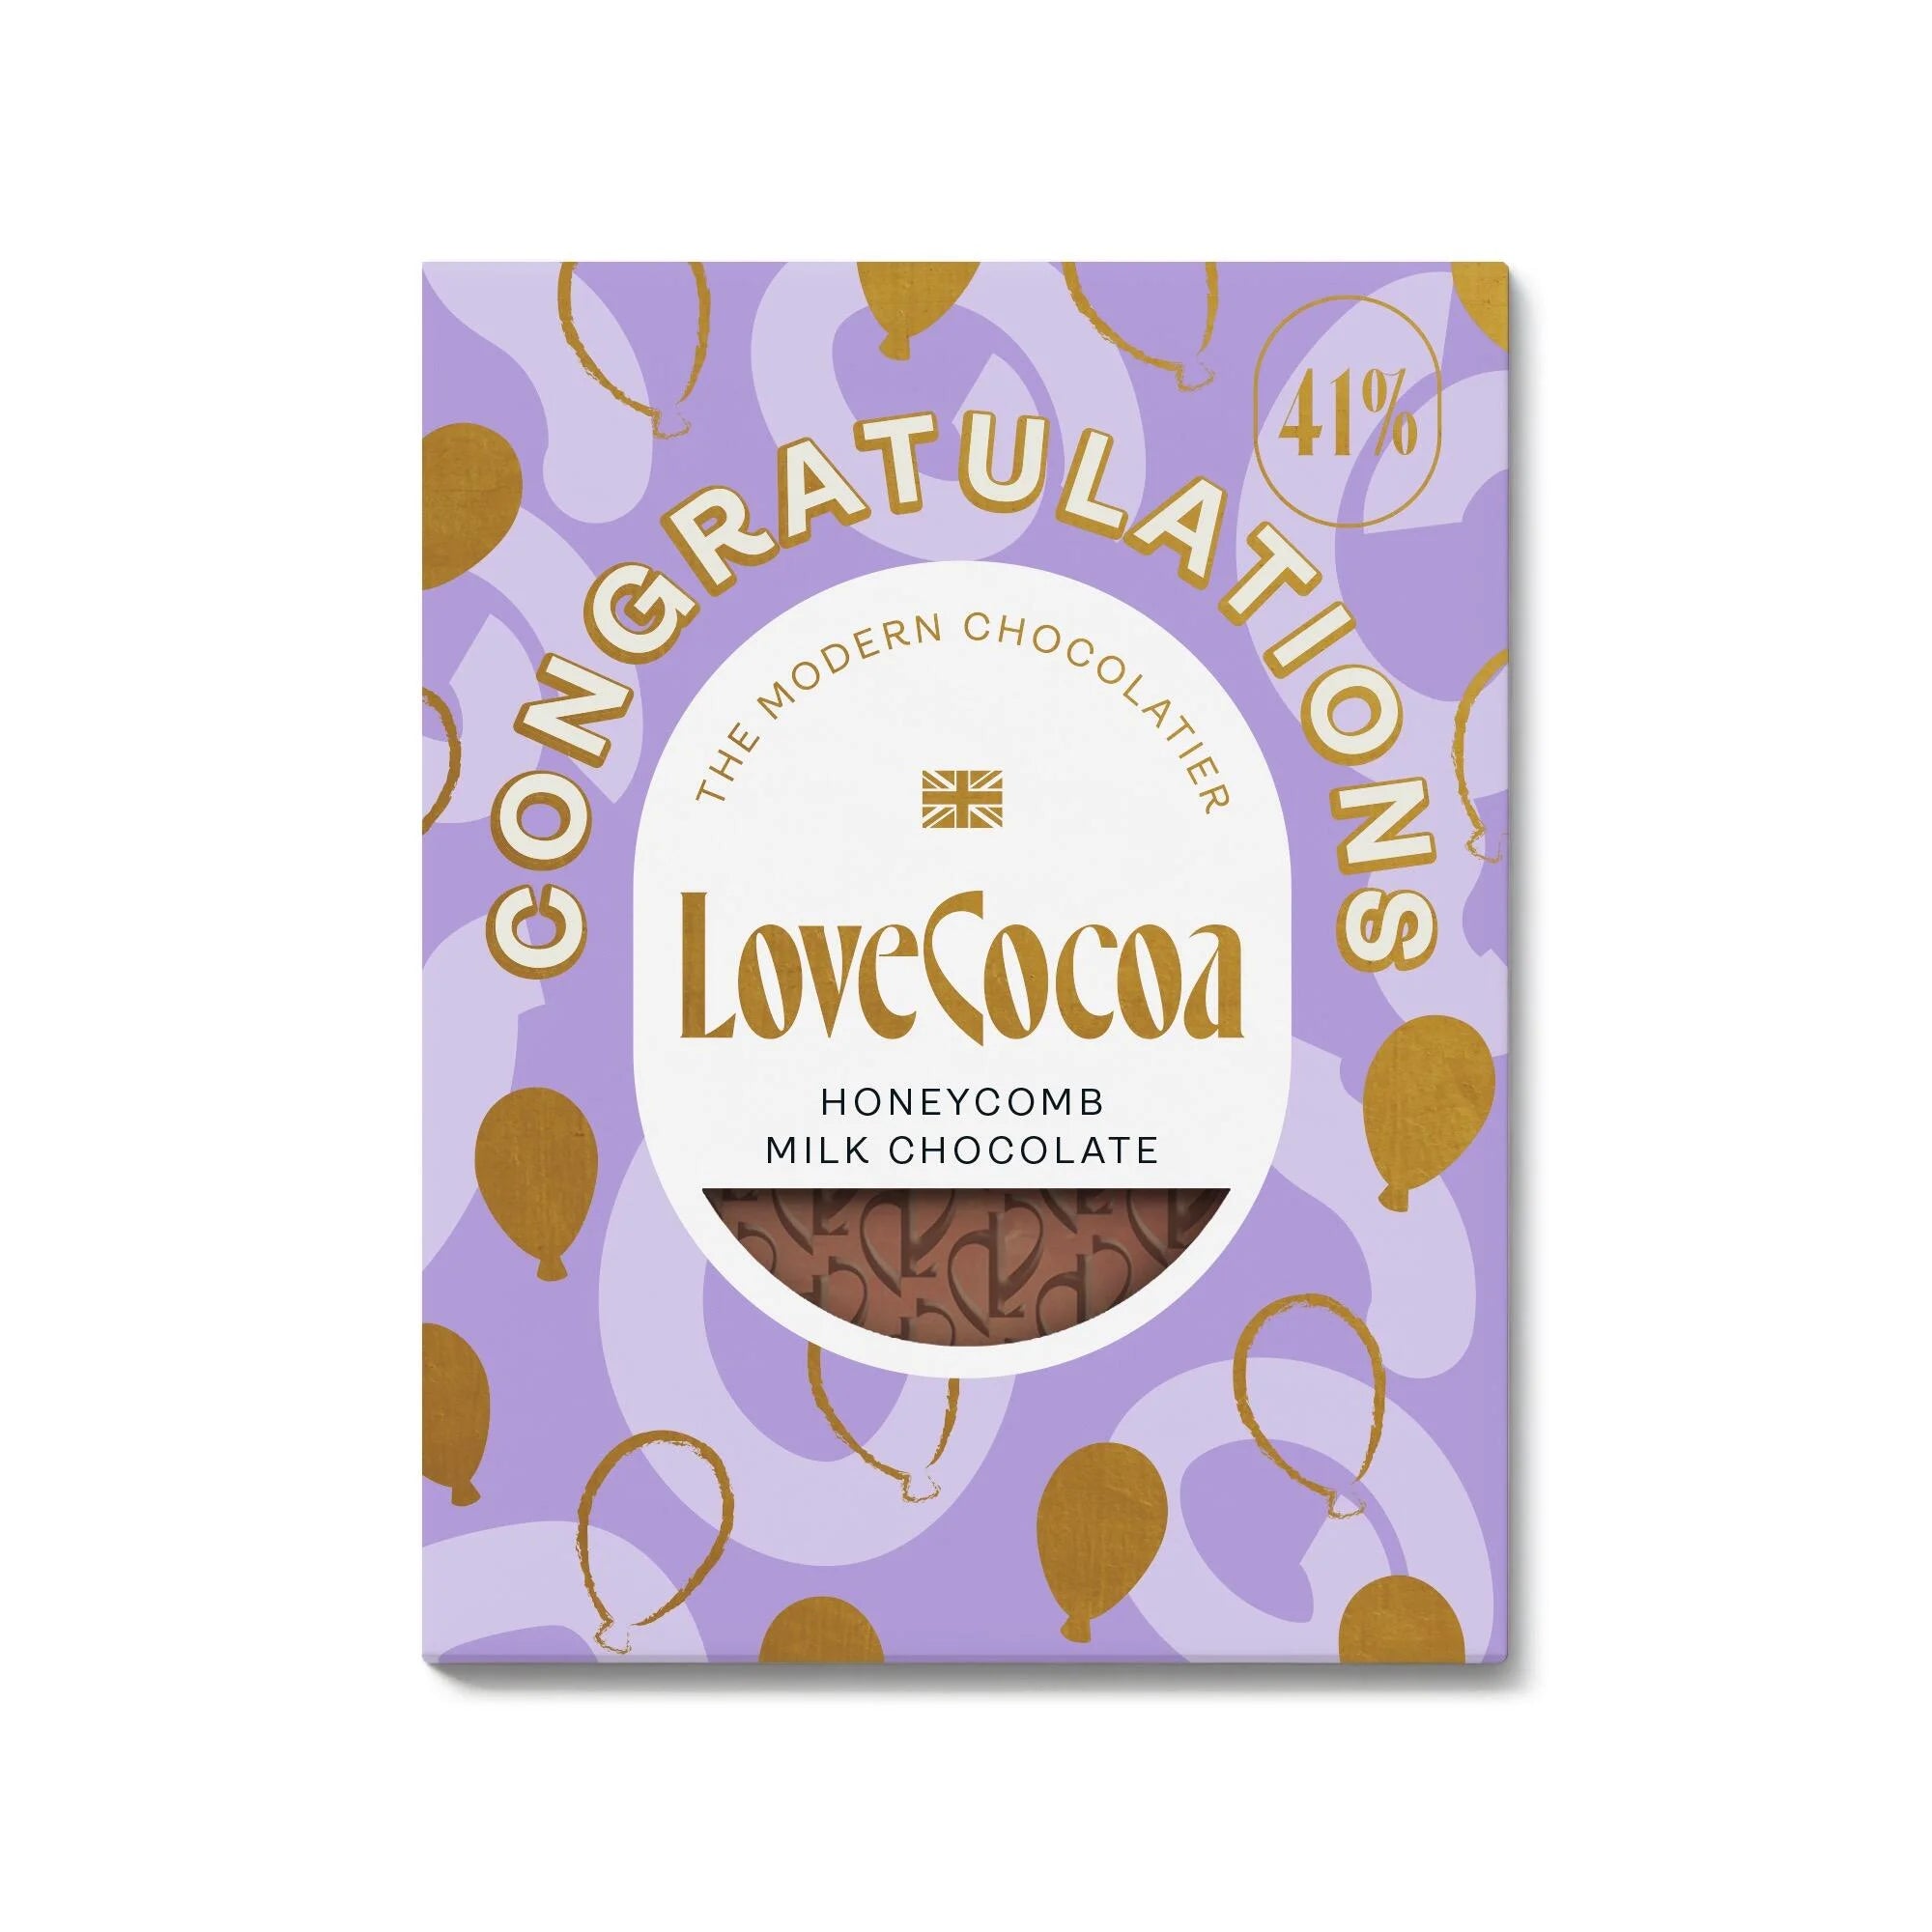 Love cocoa | Congratulations